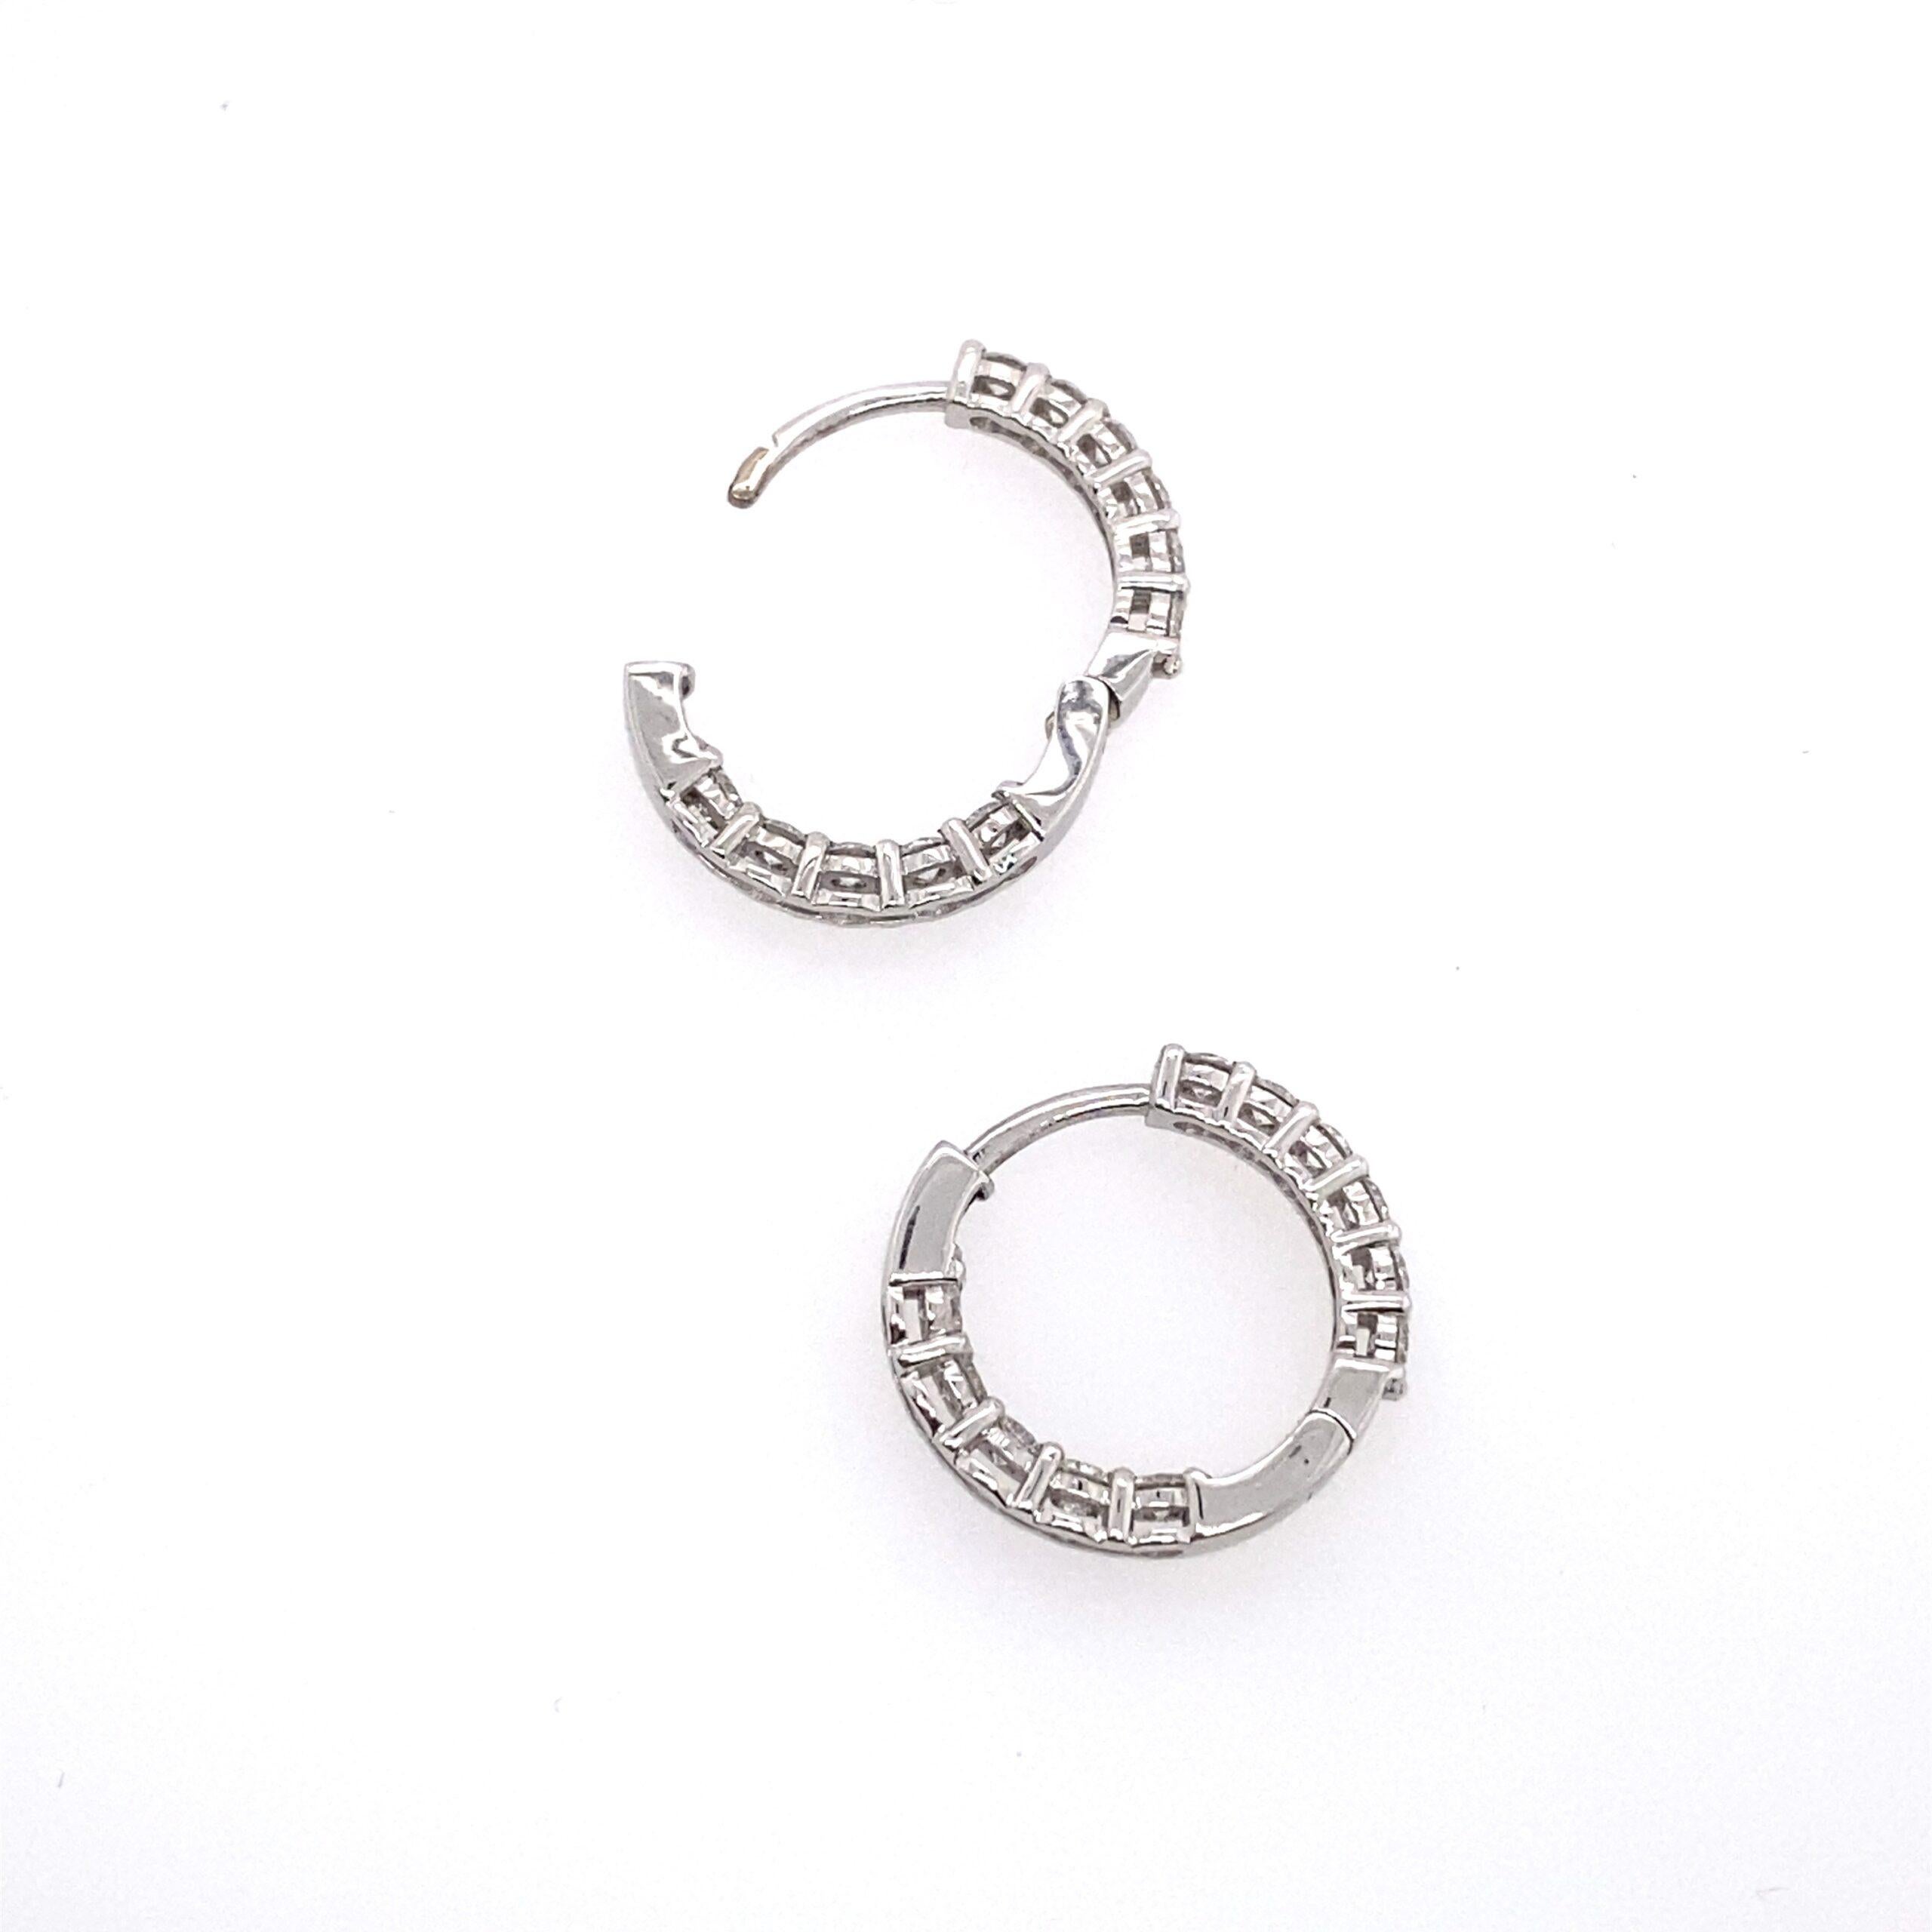 Women's Diamond Hoop Earrings Set with 11 Diamonds in Each Earring in 18ct White Gold For Sale